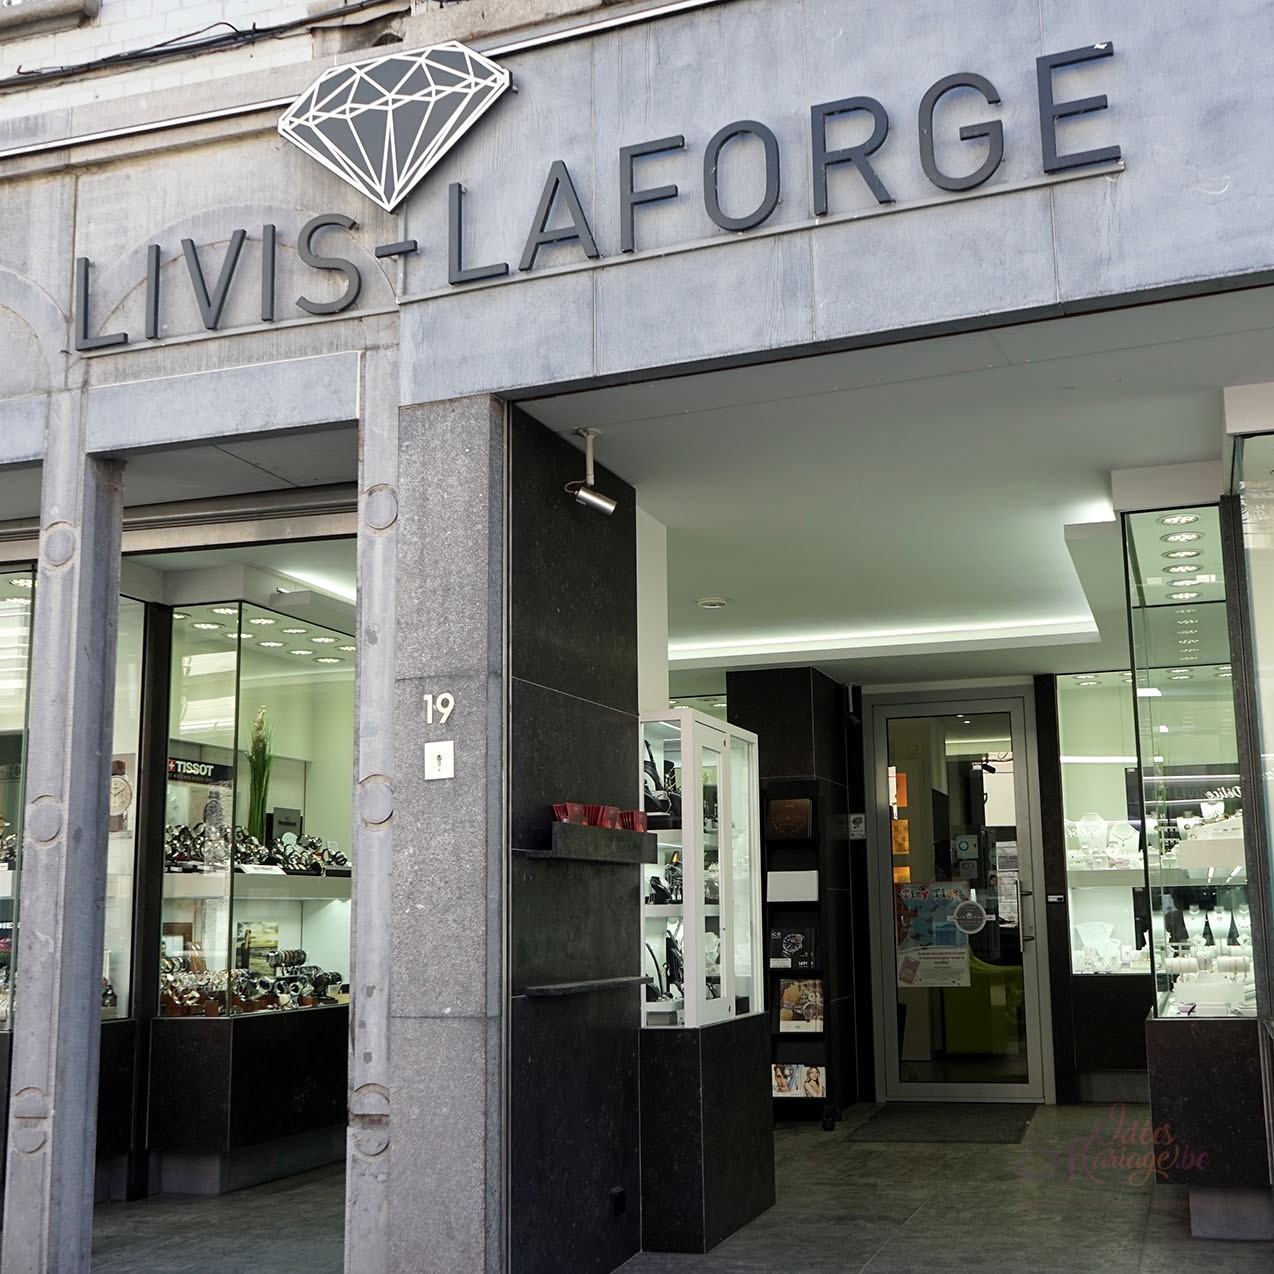 Livis Laforge Soignies